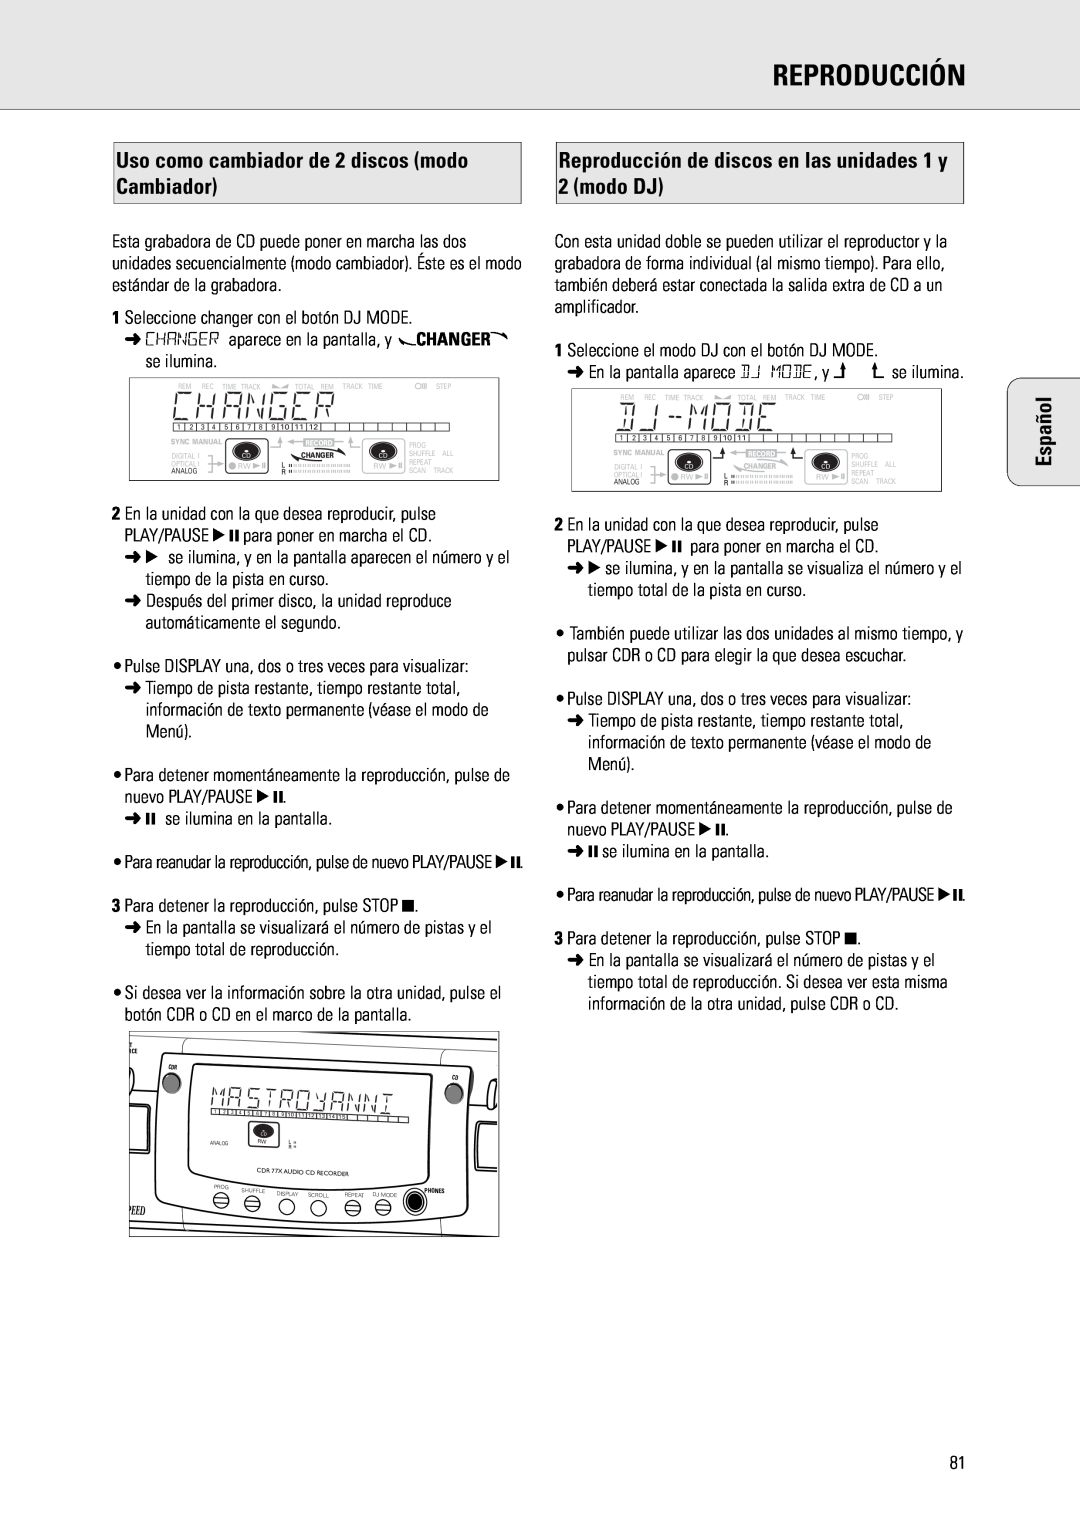 Philips CDR775 manual Cambiador, modo DJ, Reproducción de discos en las unidades 1 y, Español 